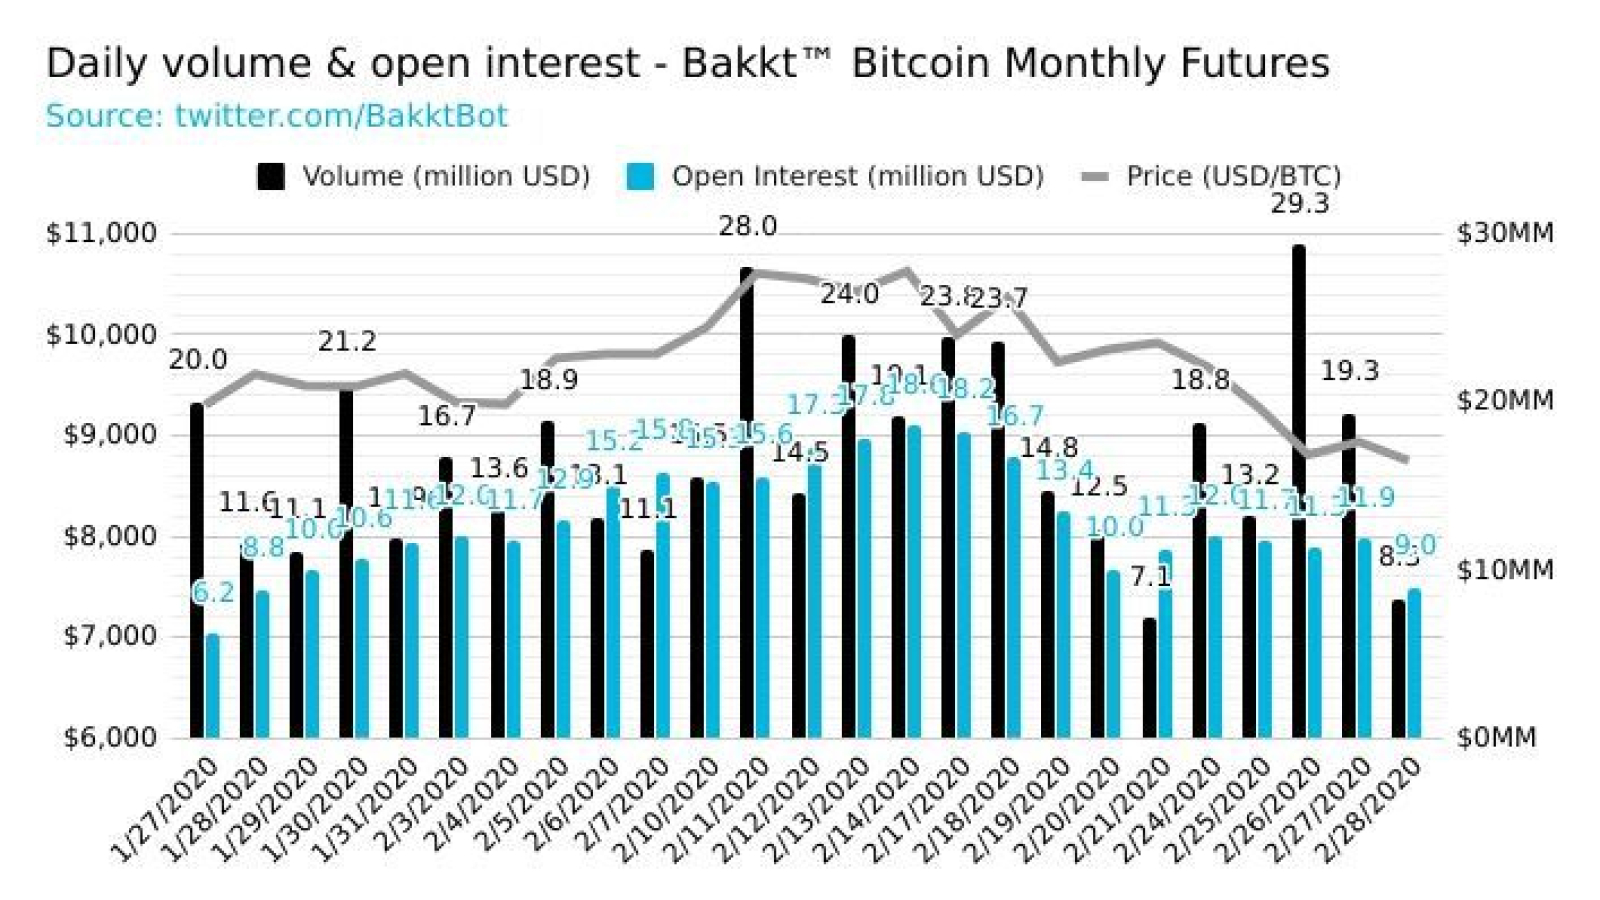 Bakkt bitcoin volume has been increasing